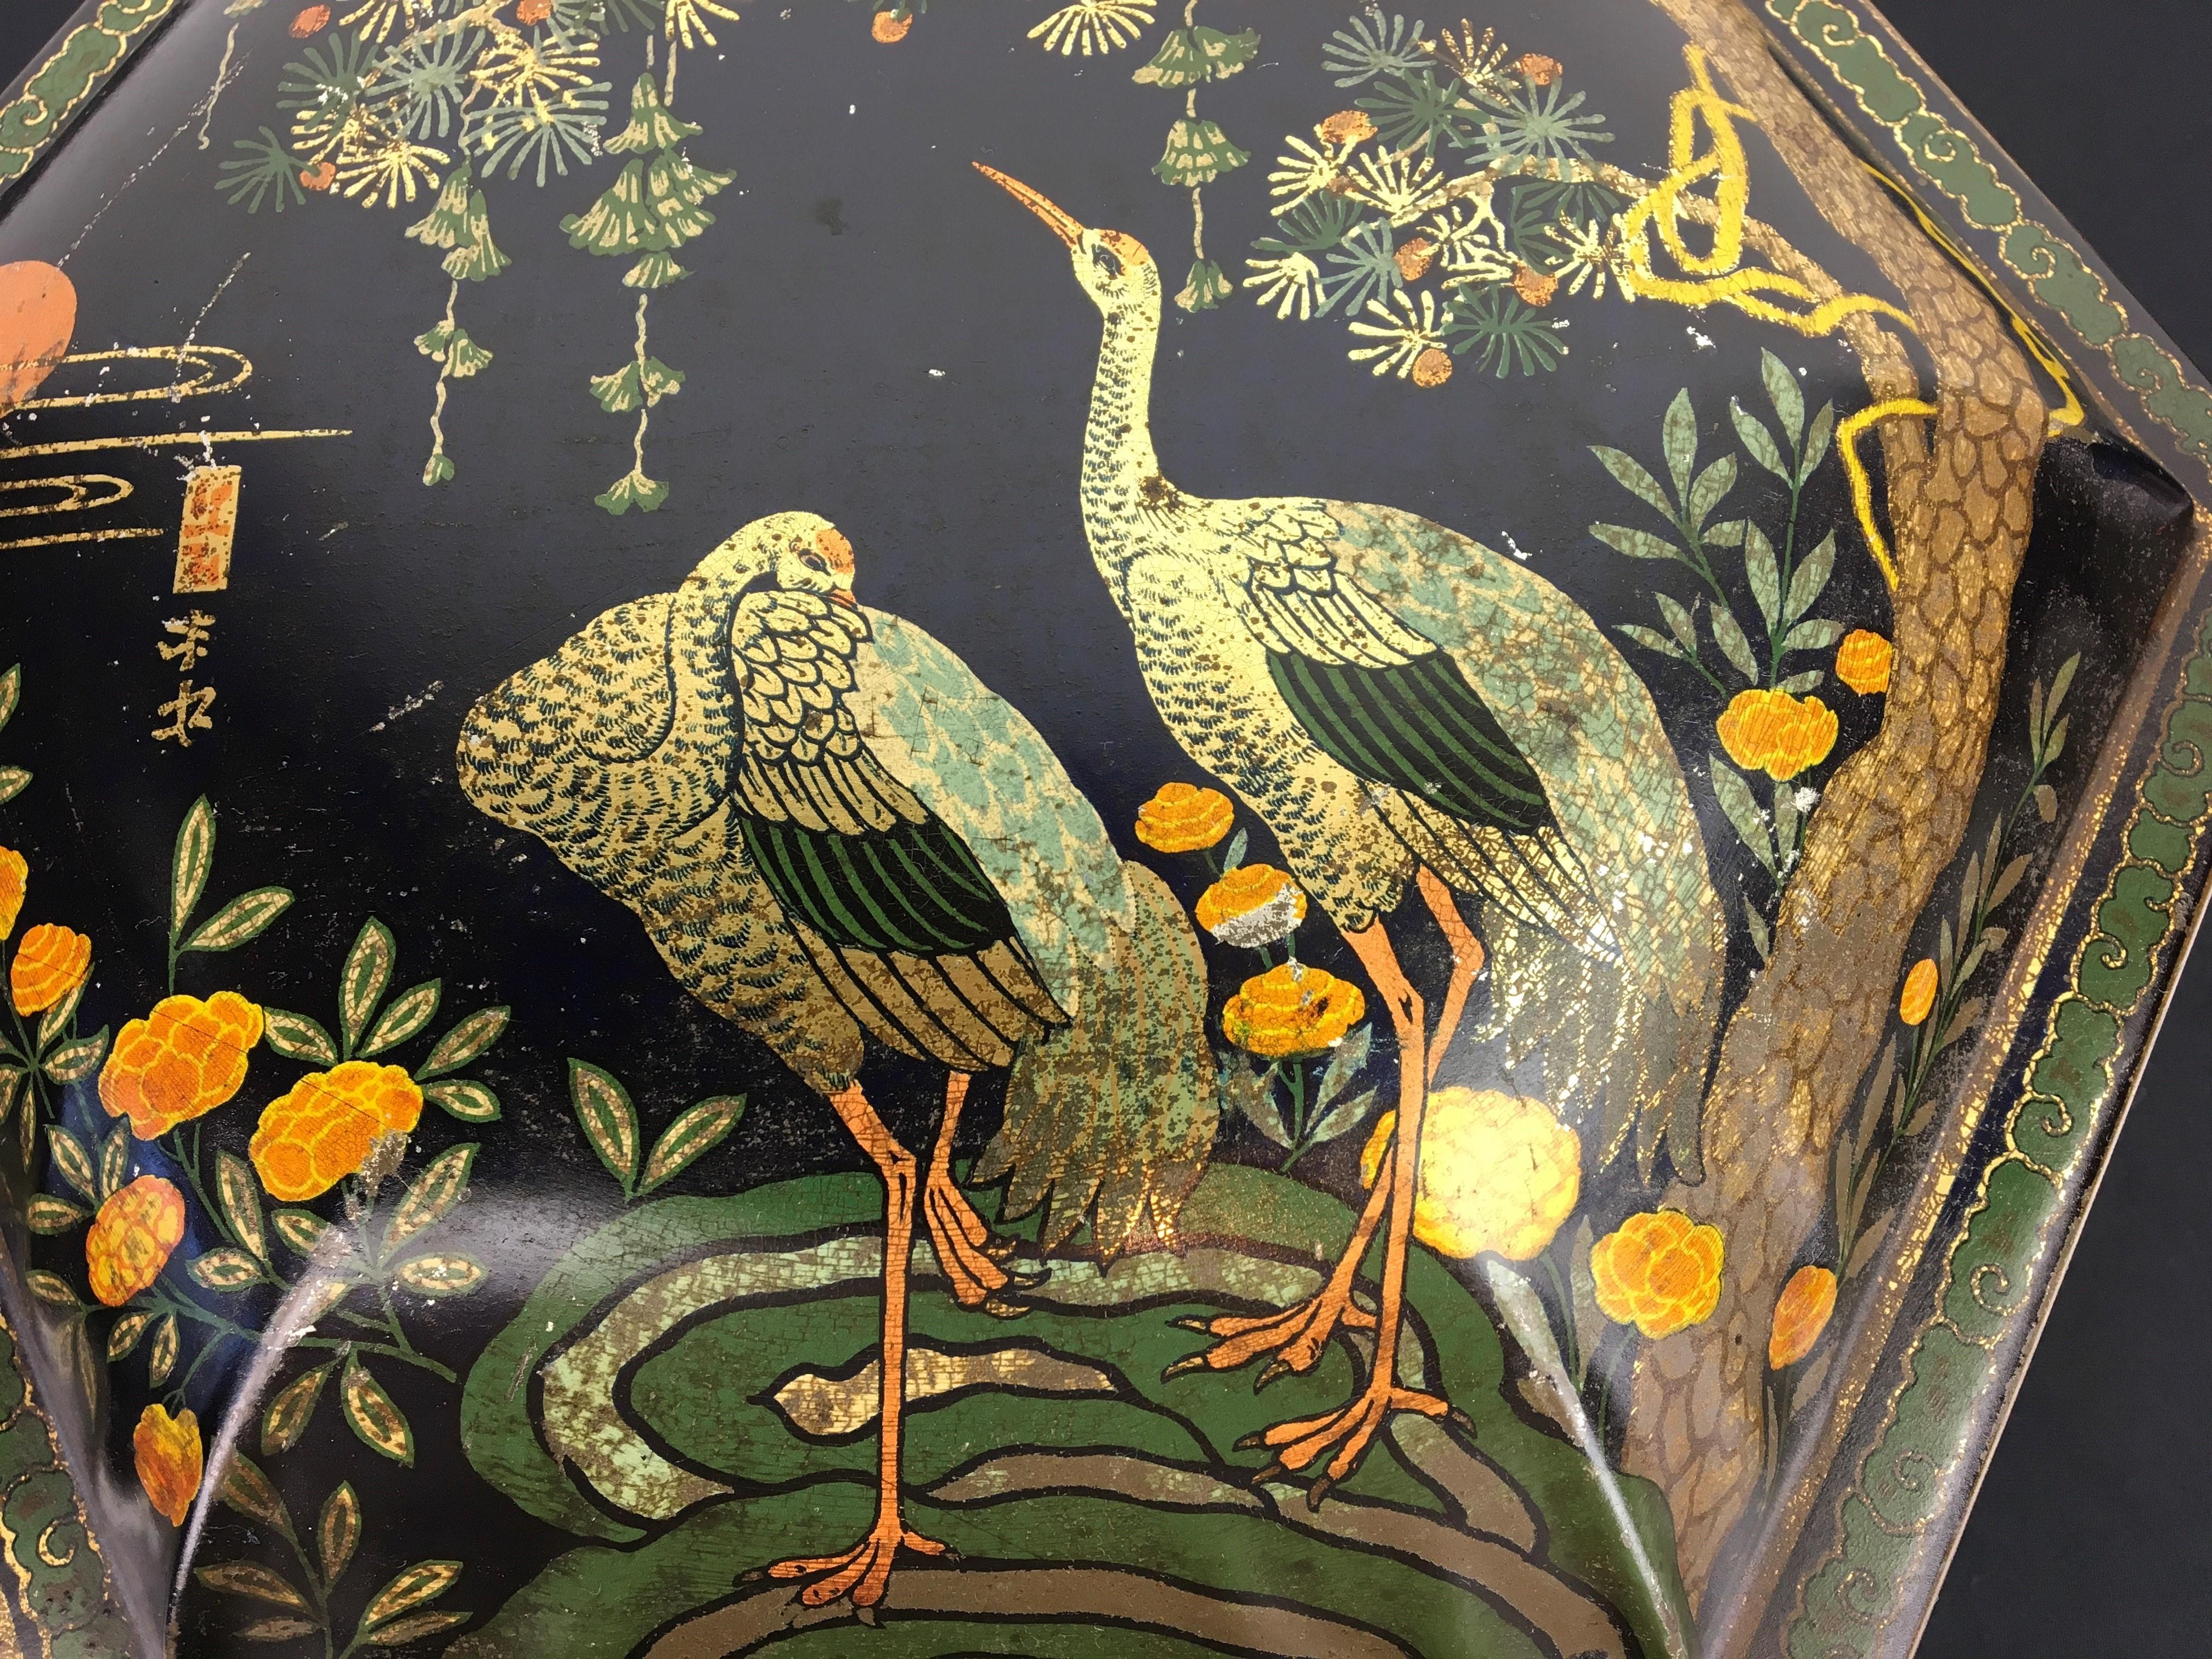 Antike Dose im asiatischen Stil mit Kranichen. 
Diese lithografische Blechdose mit Vögeln stammt aus dem frühen 20. Jahrhundert.
Es handelt sich um eine stilvolle und elegante antike Metalldose in sechseckiger Form mit Deckel.
In dunkelblauer Farbe